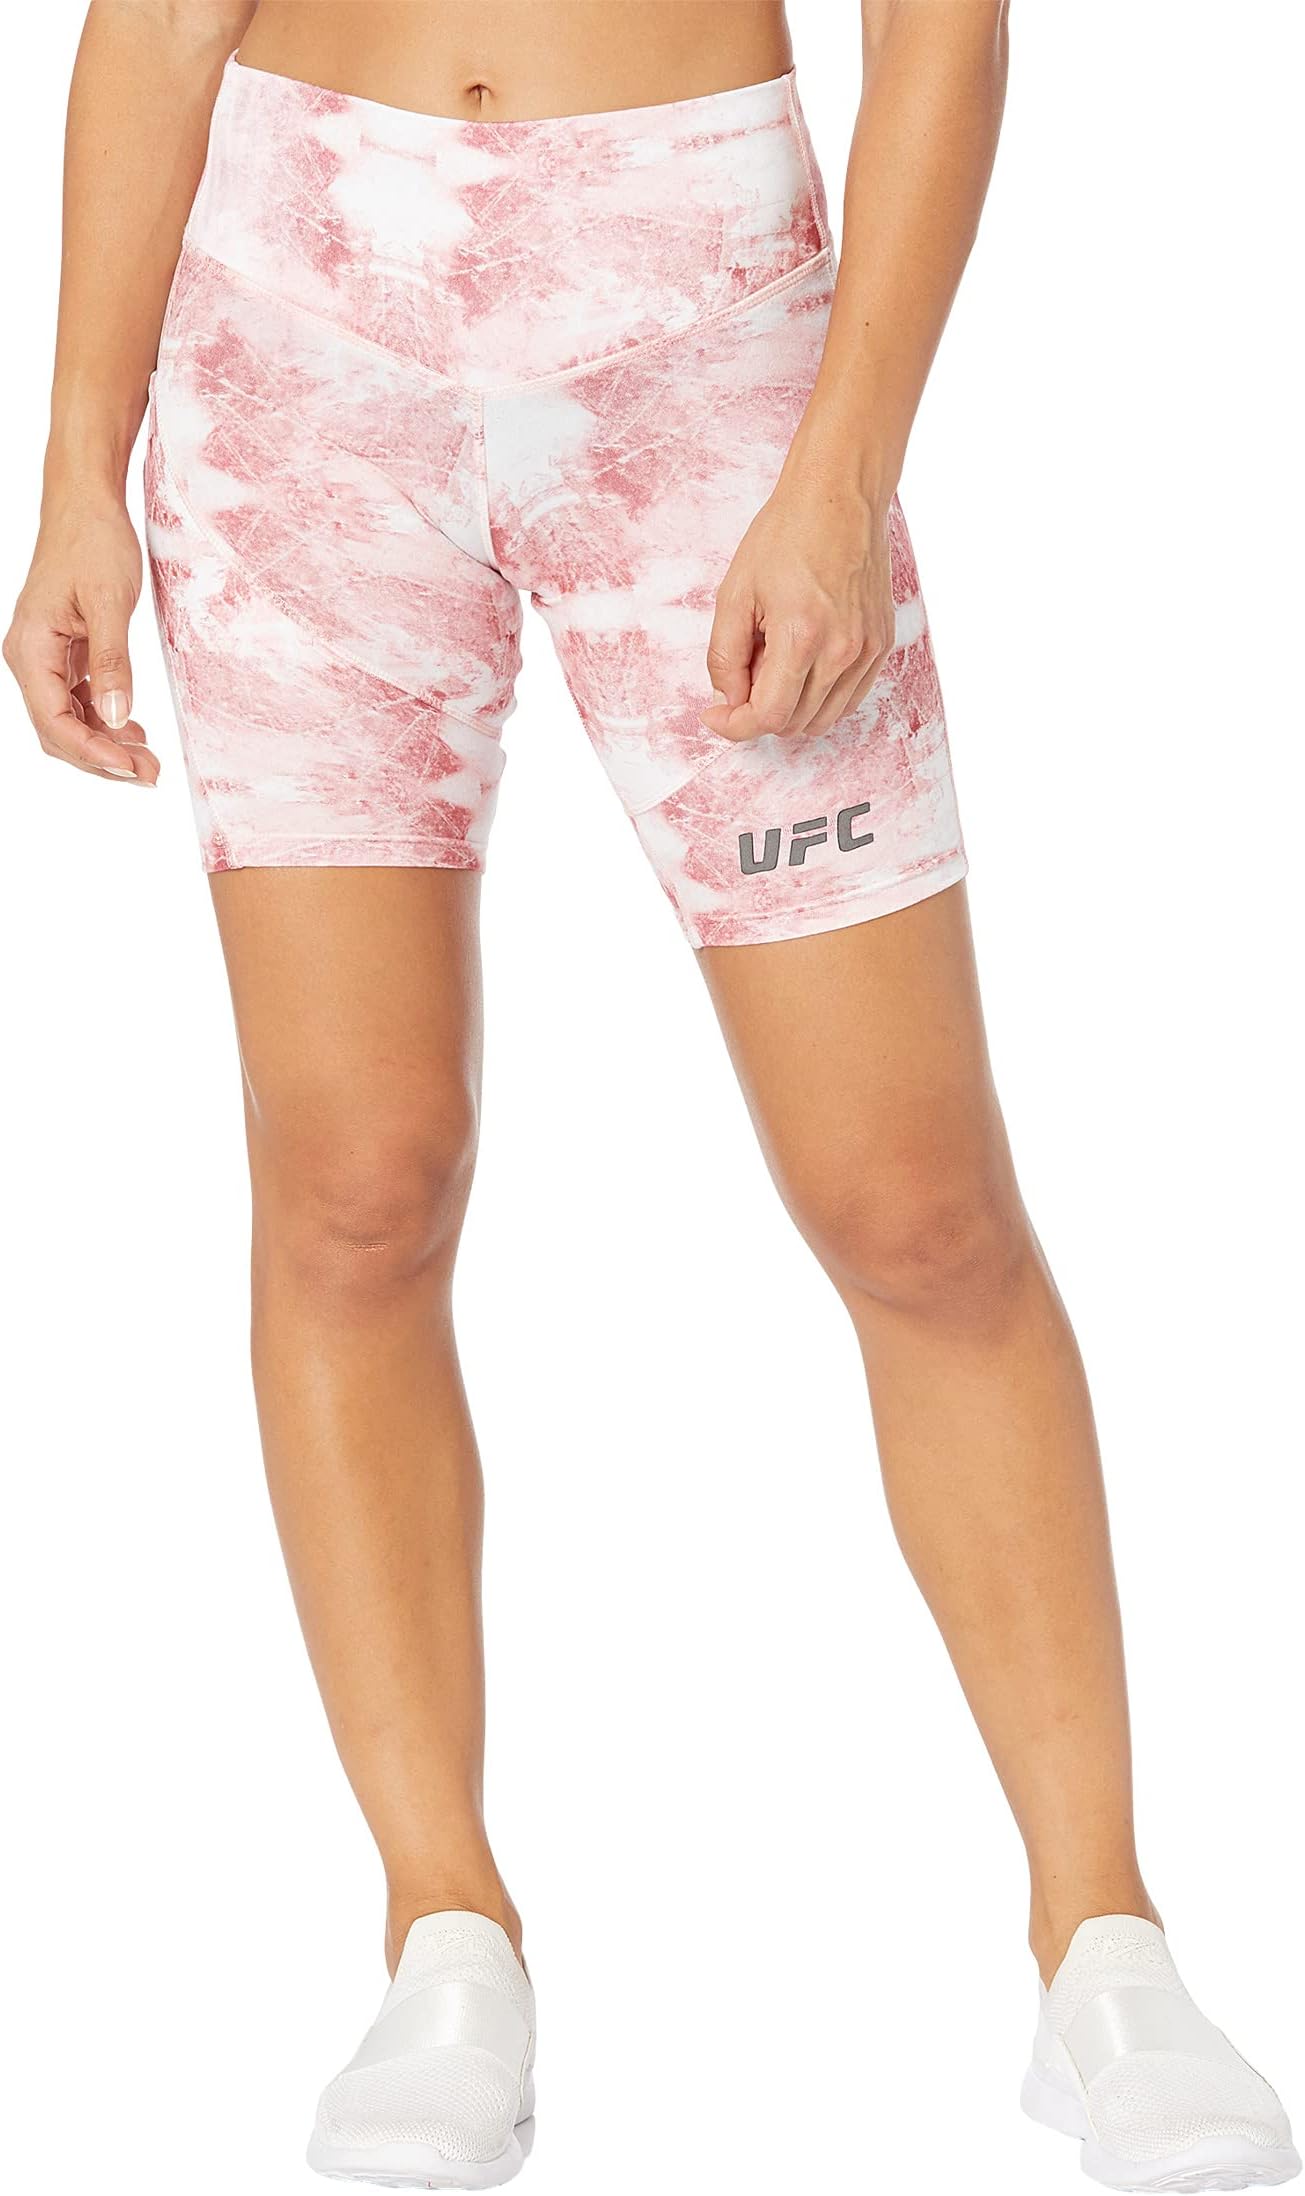 Шорты для экстремальных тренировок 9 дюймов с кварцевым принтом UFC, цвет Blushing Rose blushing beauty